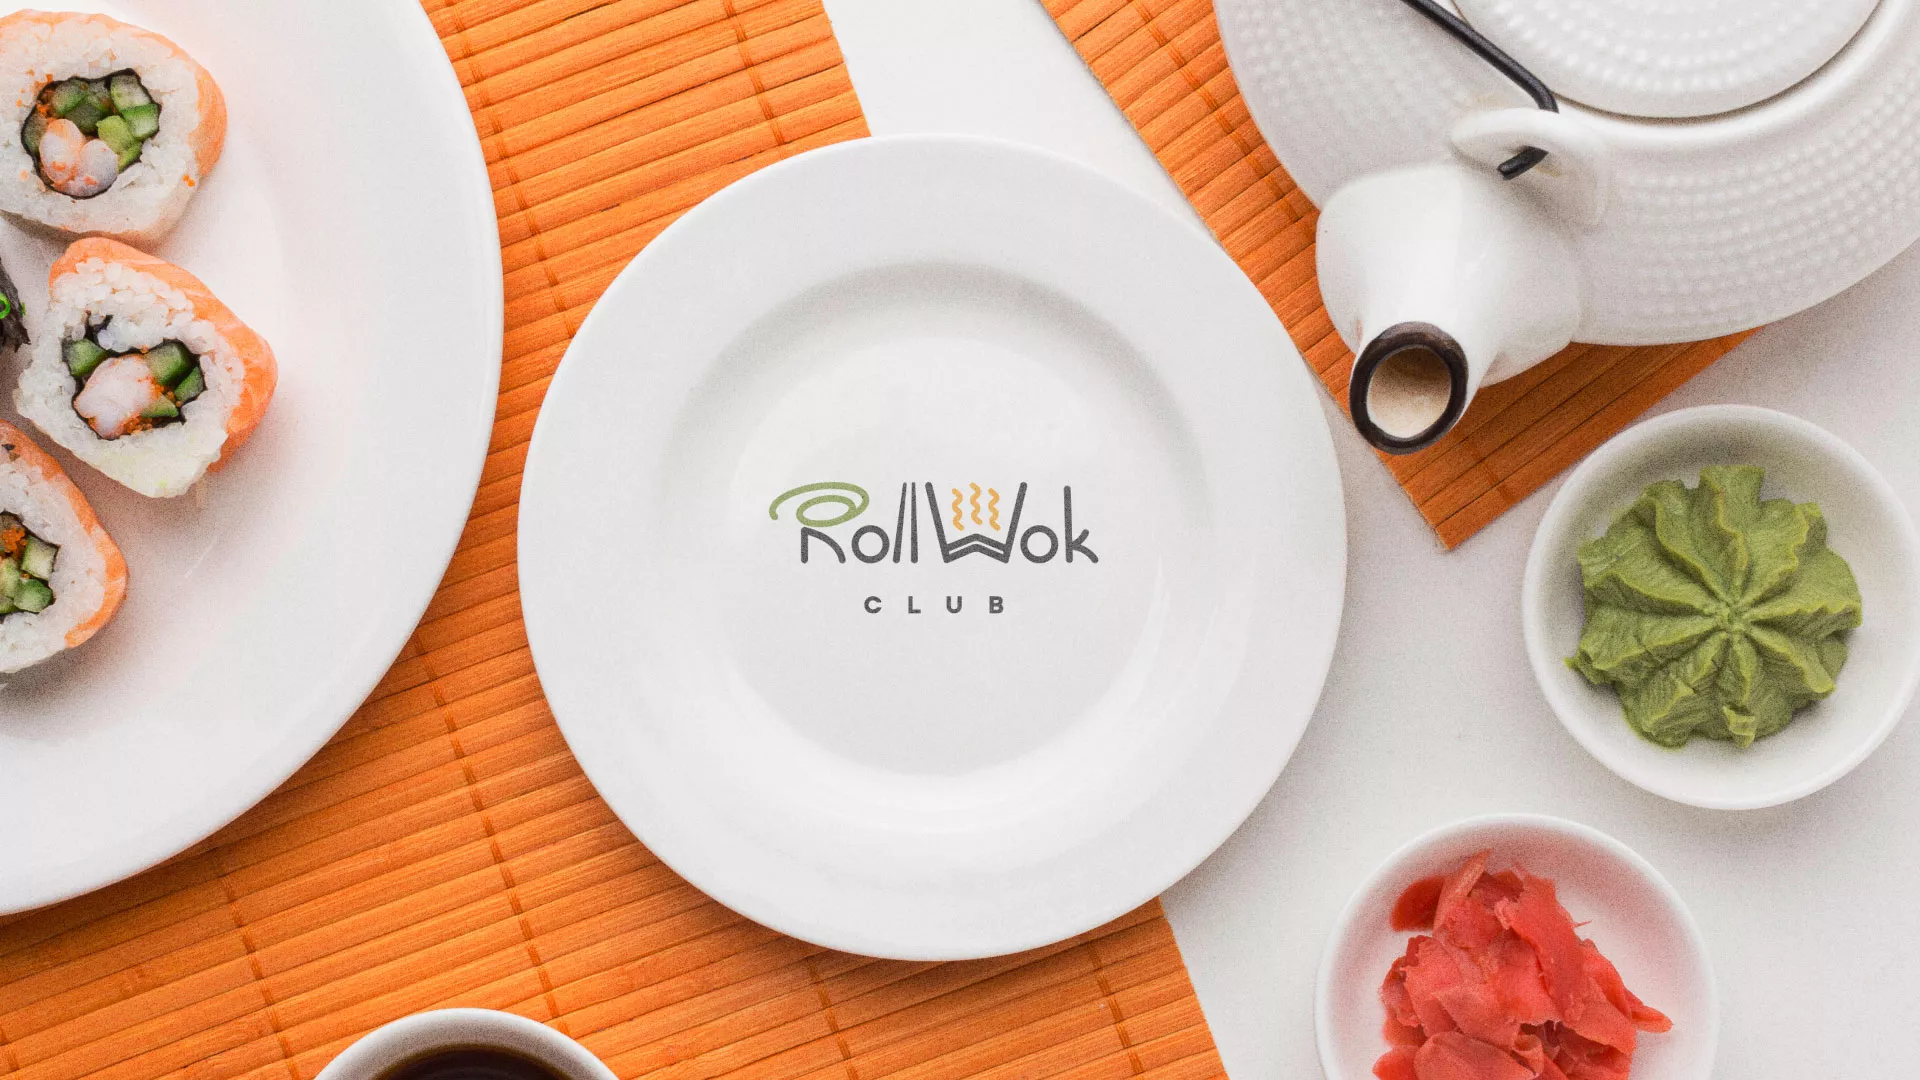 Разработка логотипа и фирменного стиля суши-бара «Roll Wok Club» в Сланцах